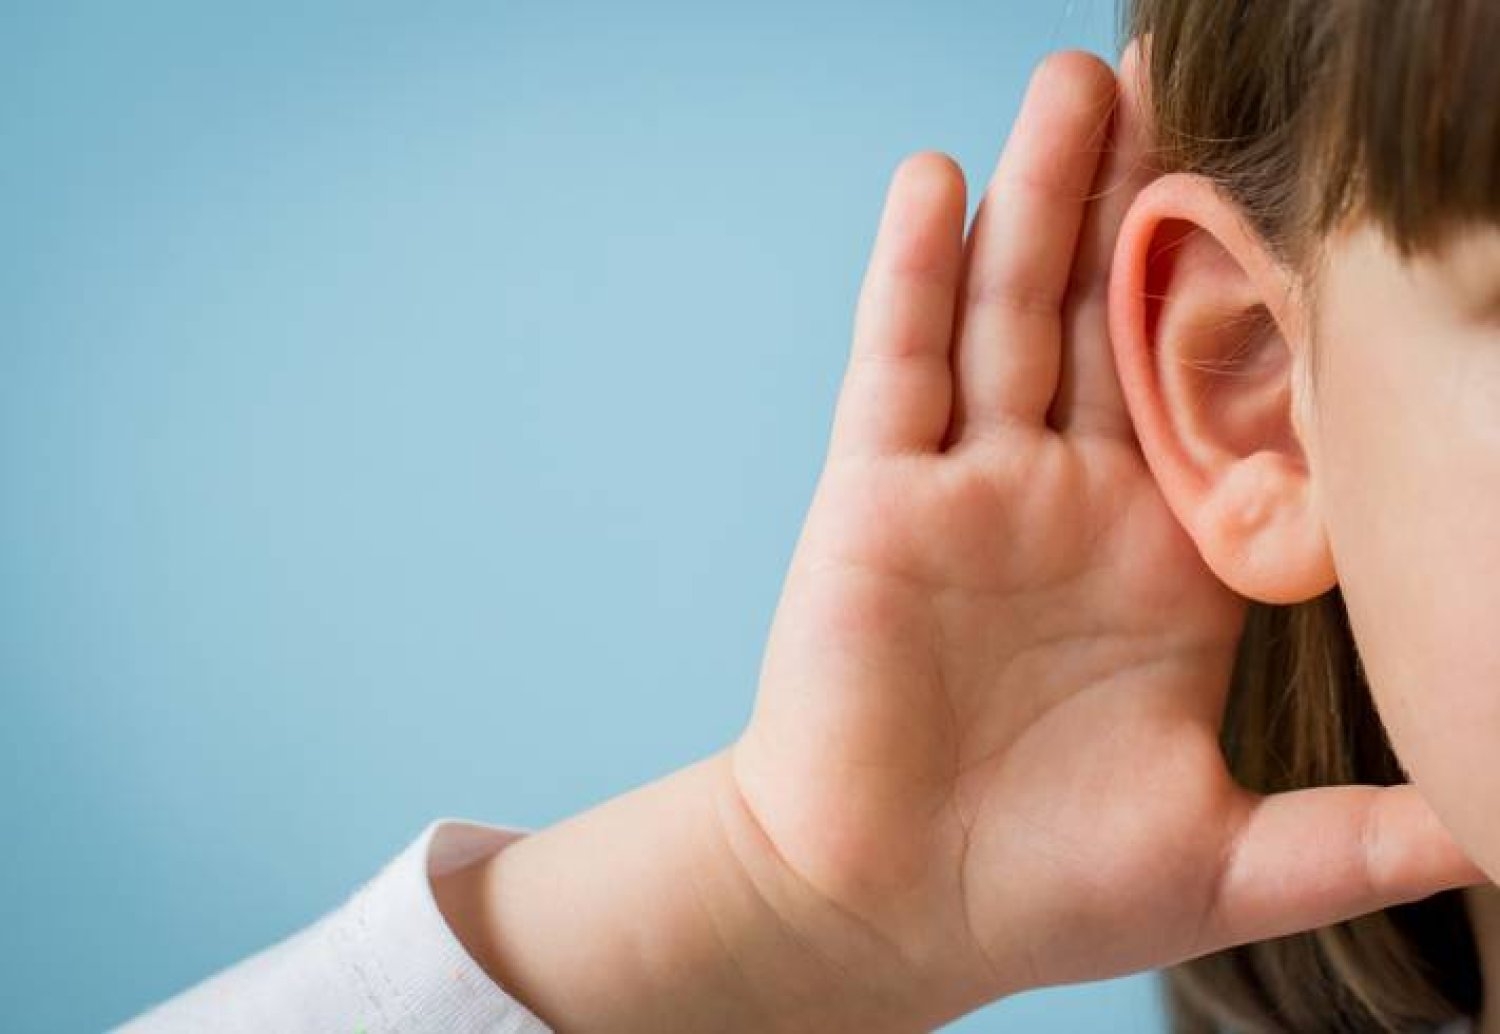 علاج جيني جديد يعيد السمع لأطفال ولدوا صمّا